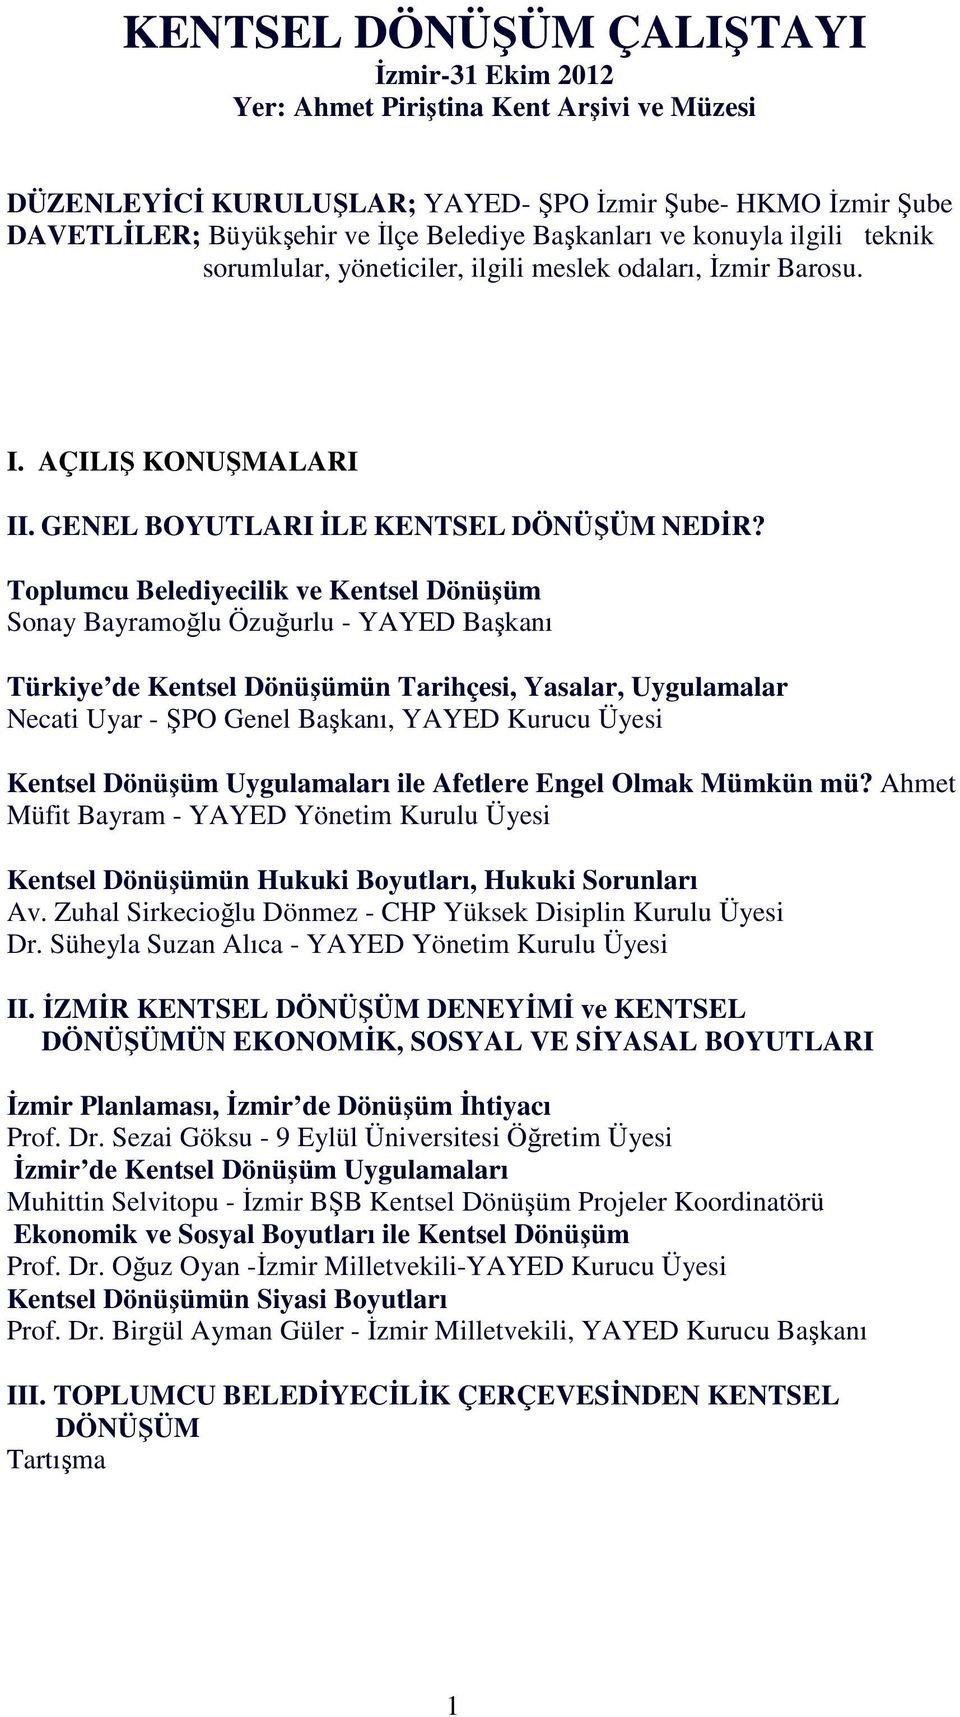 Toplumcu Belediyecilik ve Kentsel Dönüşüm Sonay Bayramoğlu Özuğurlu - YAYED Başkanı Türkiye de Kentsel Dönüşümün Tarihçesi, Yasalar, Uygulamalar Necati Uyar - ŞPO Genel Başkanı, YAYED Kurucu Üyesi